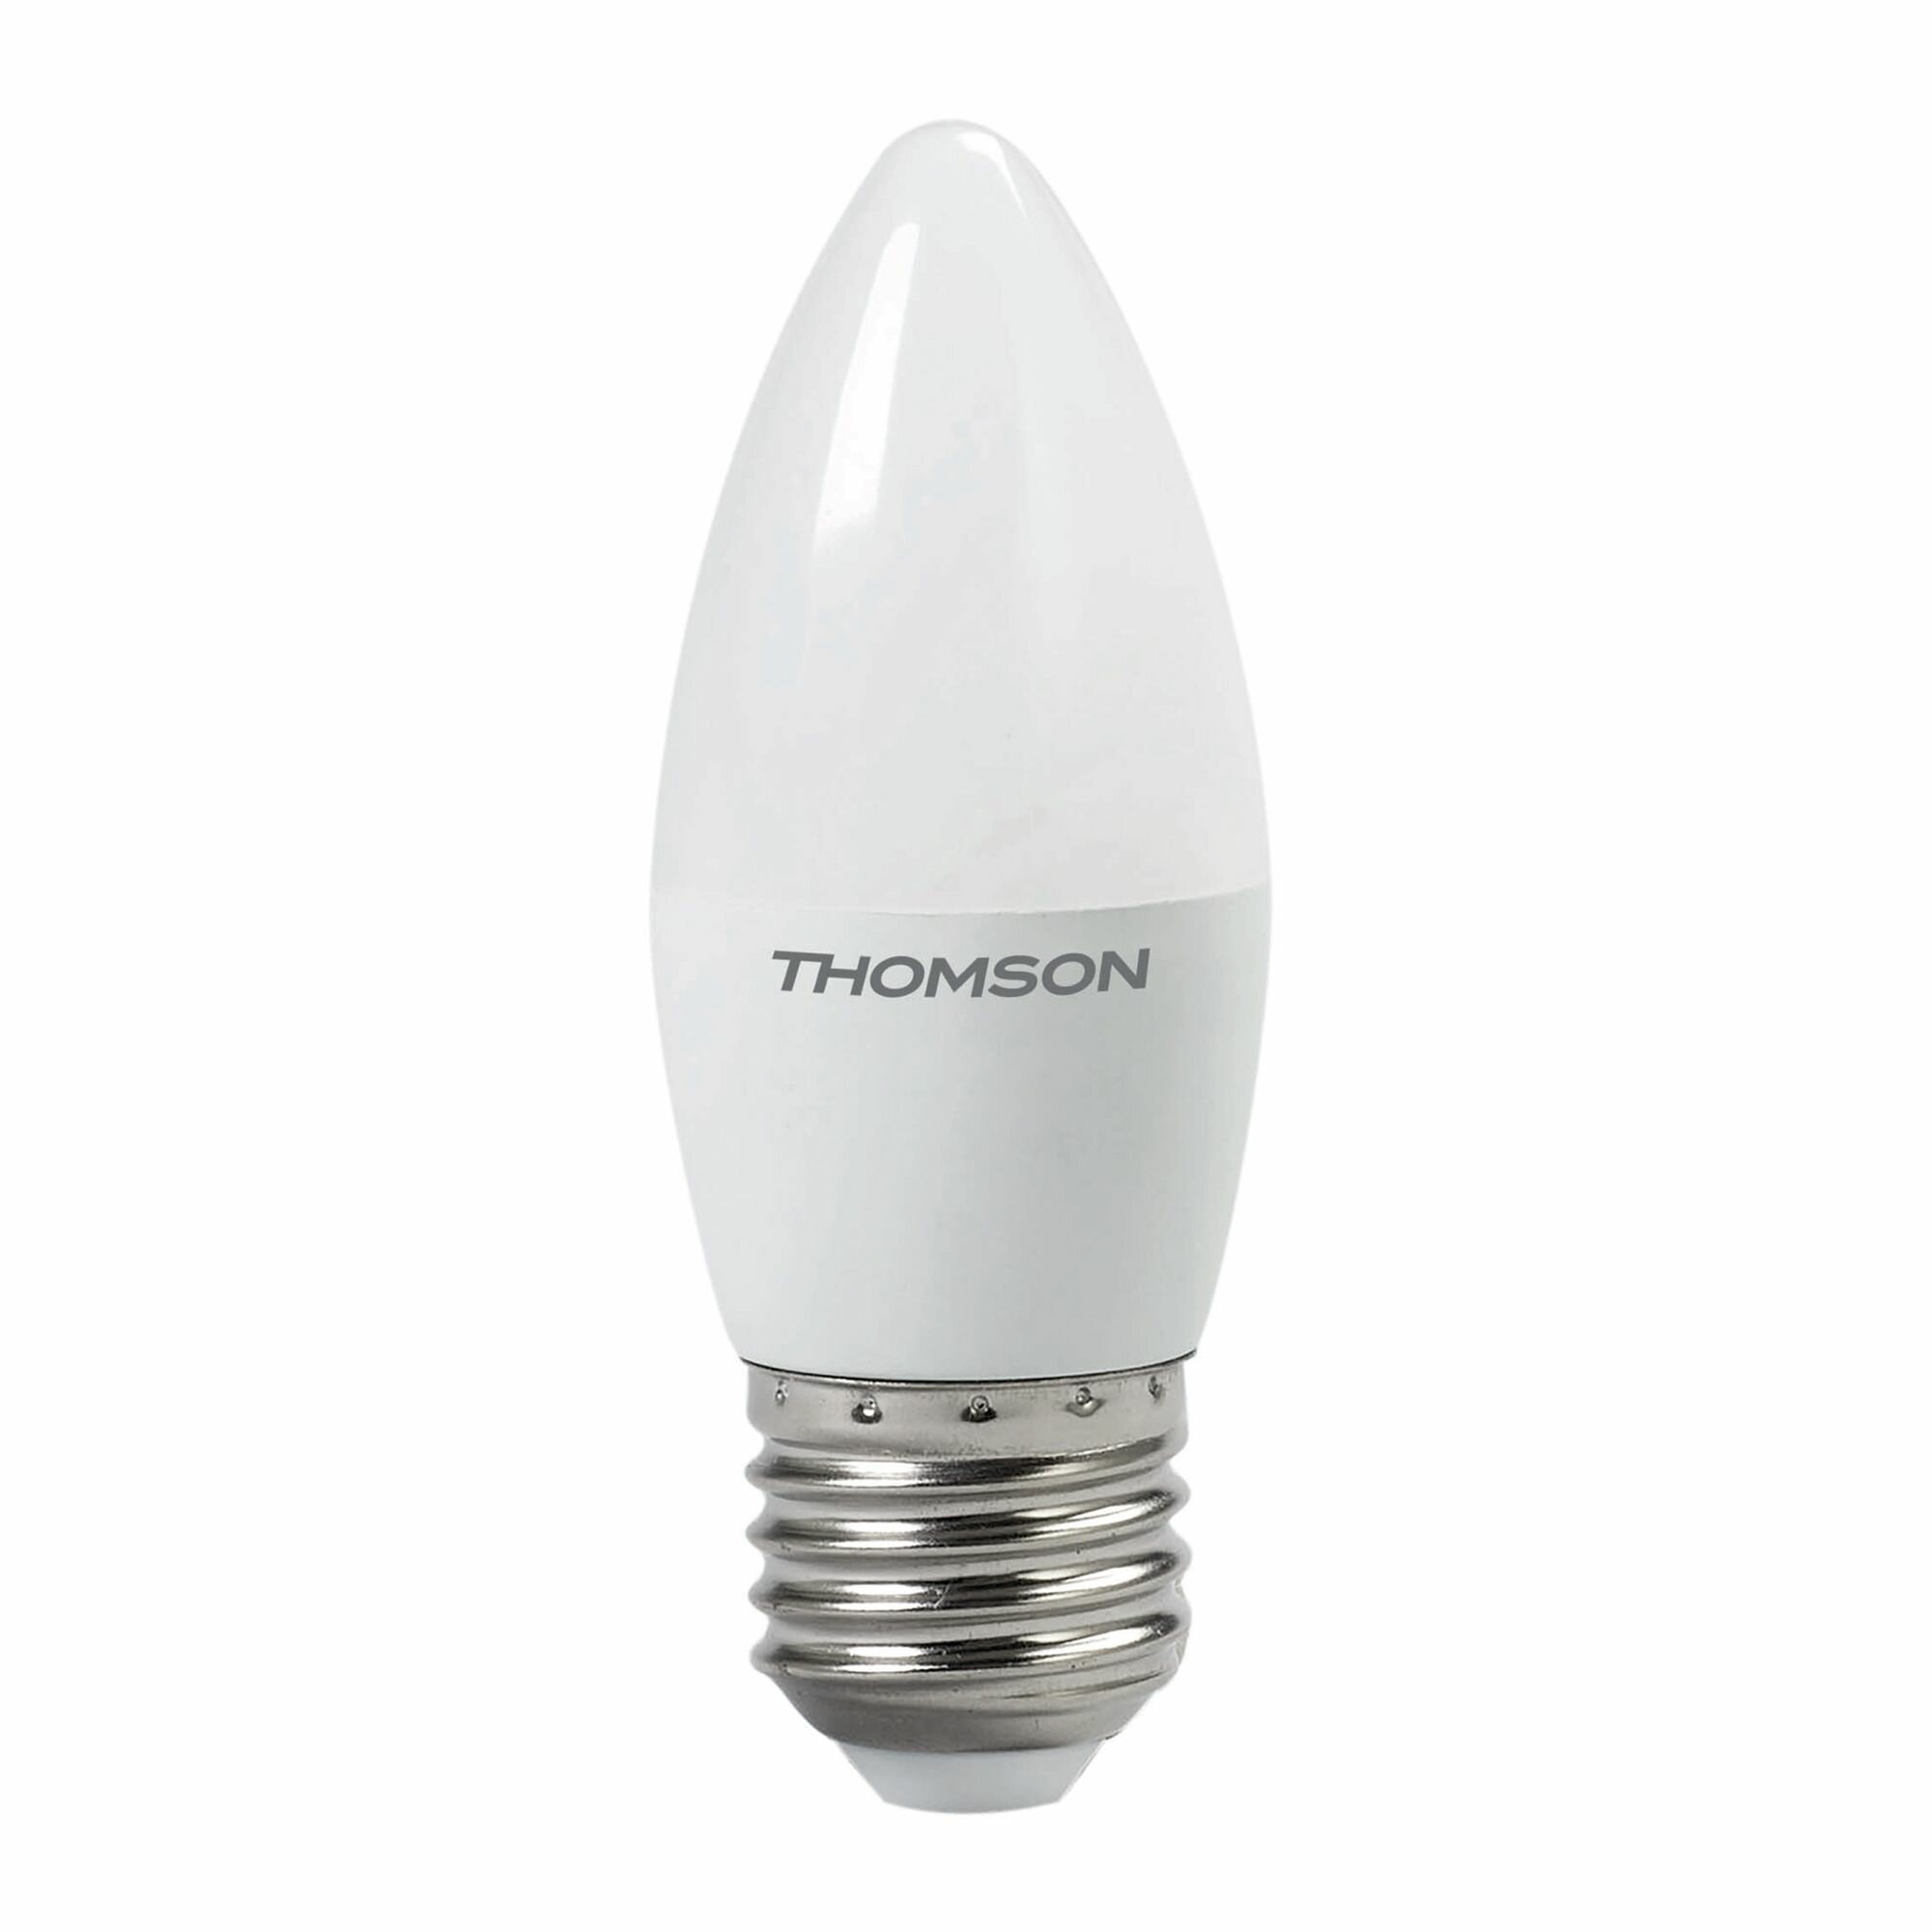 Лампочка Thomson TH-B2023 10 Вт, E27, 3000K, свеча, теплый белый свет